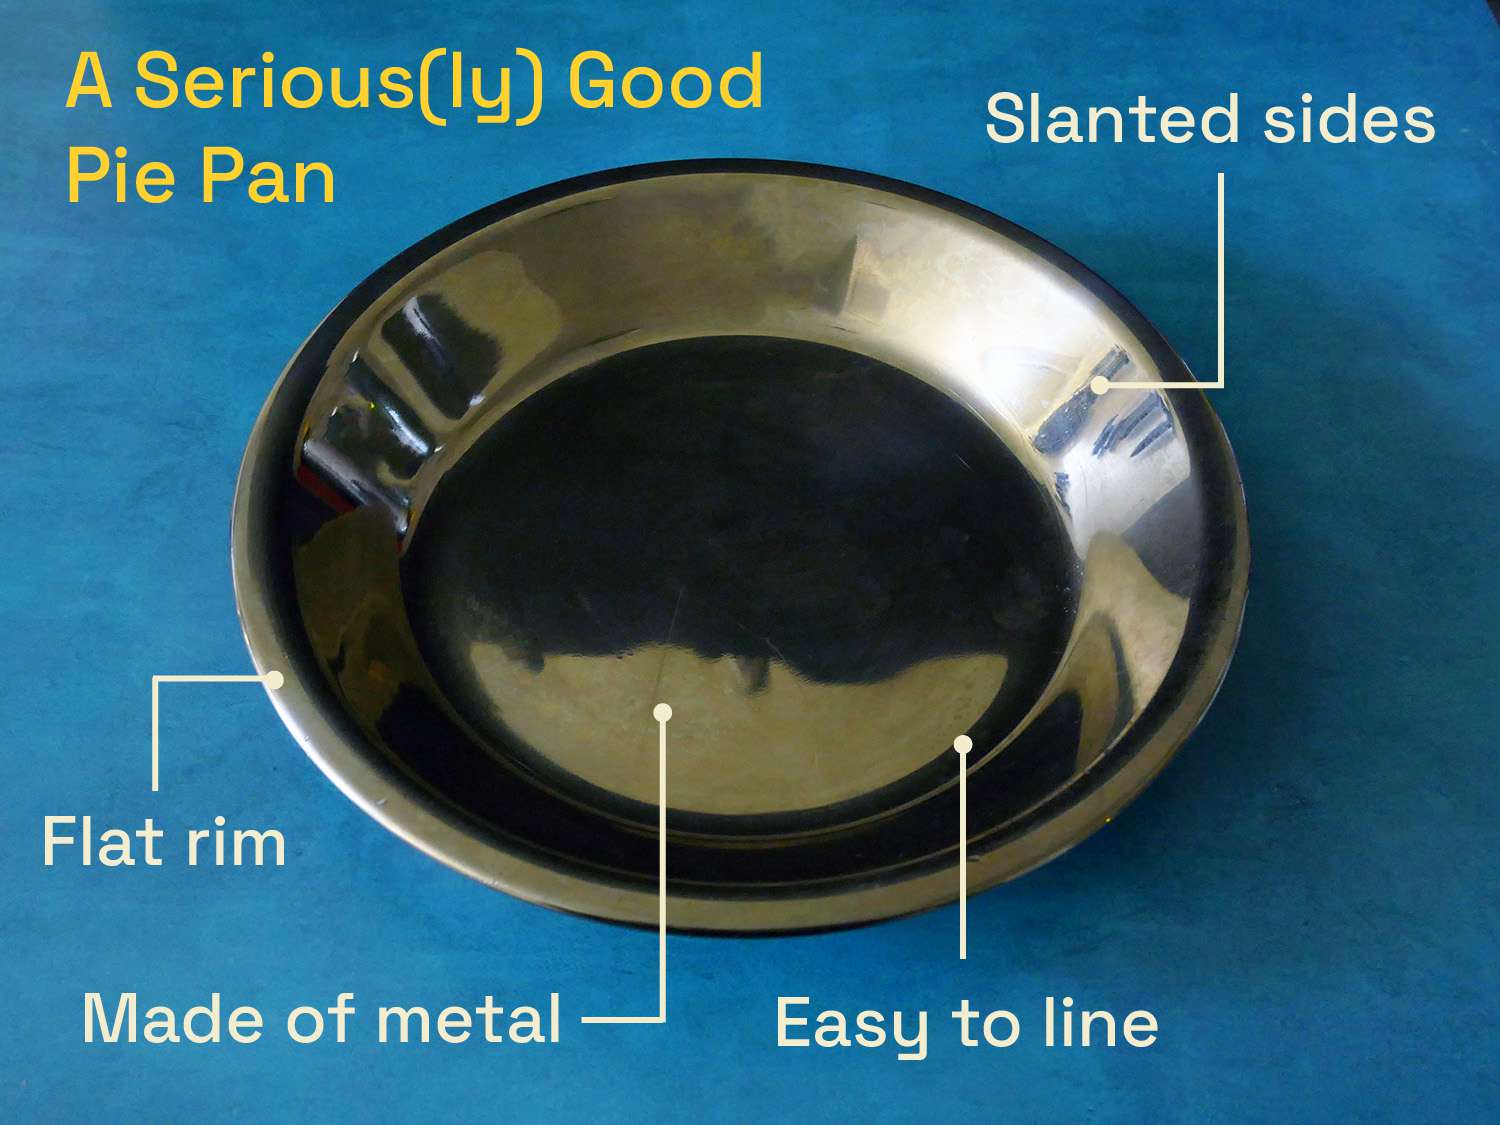 一个非常好的平底锅:平底锅边缘平坦，金属材质，易于划线，侧面倾斜